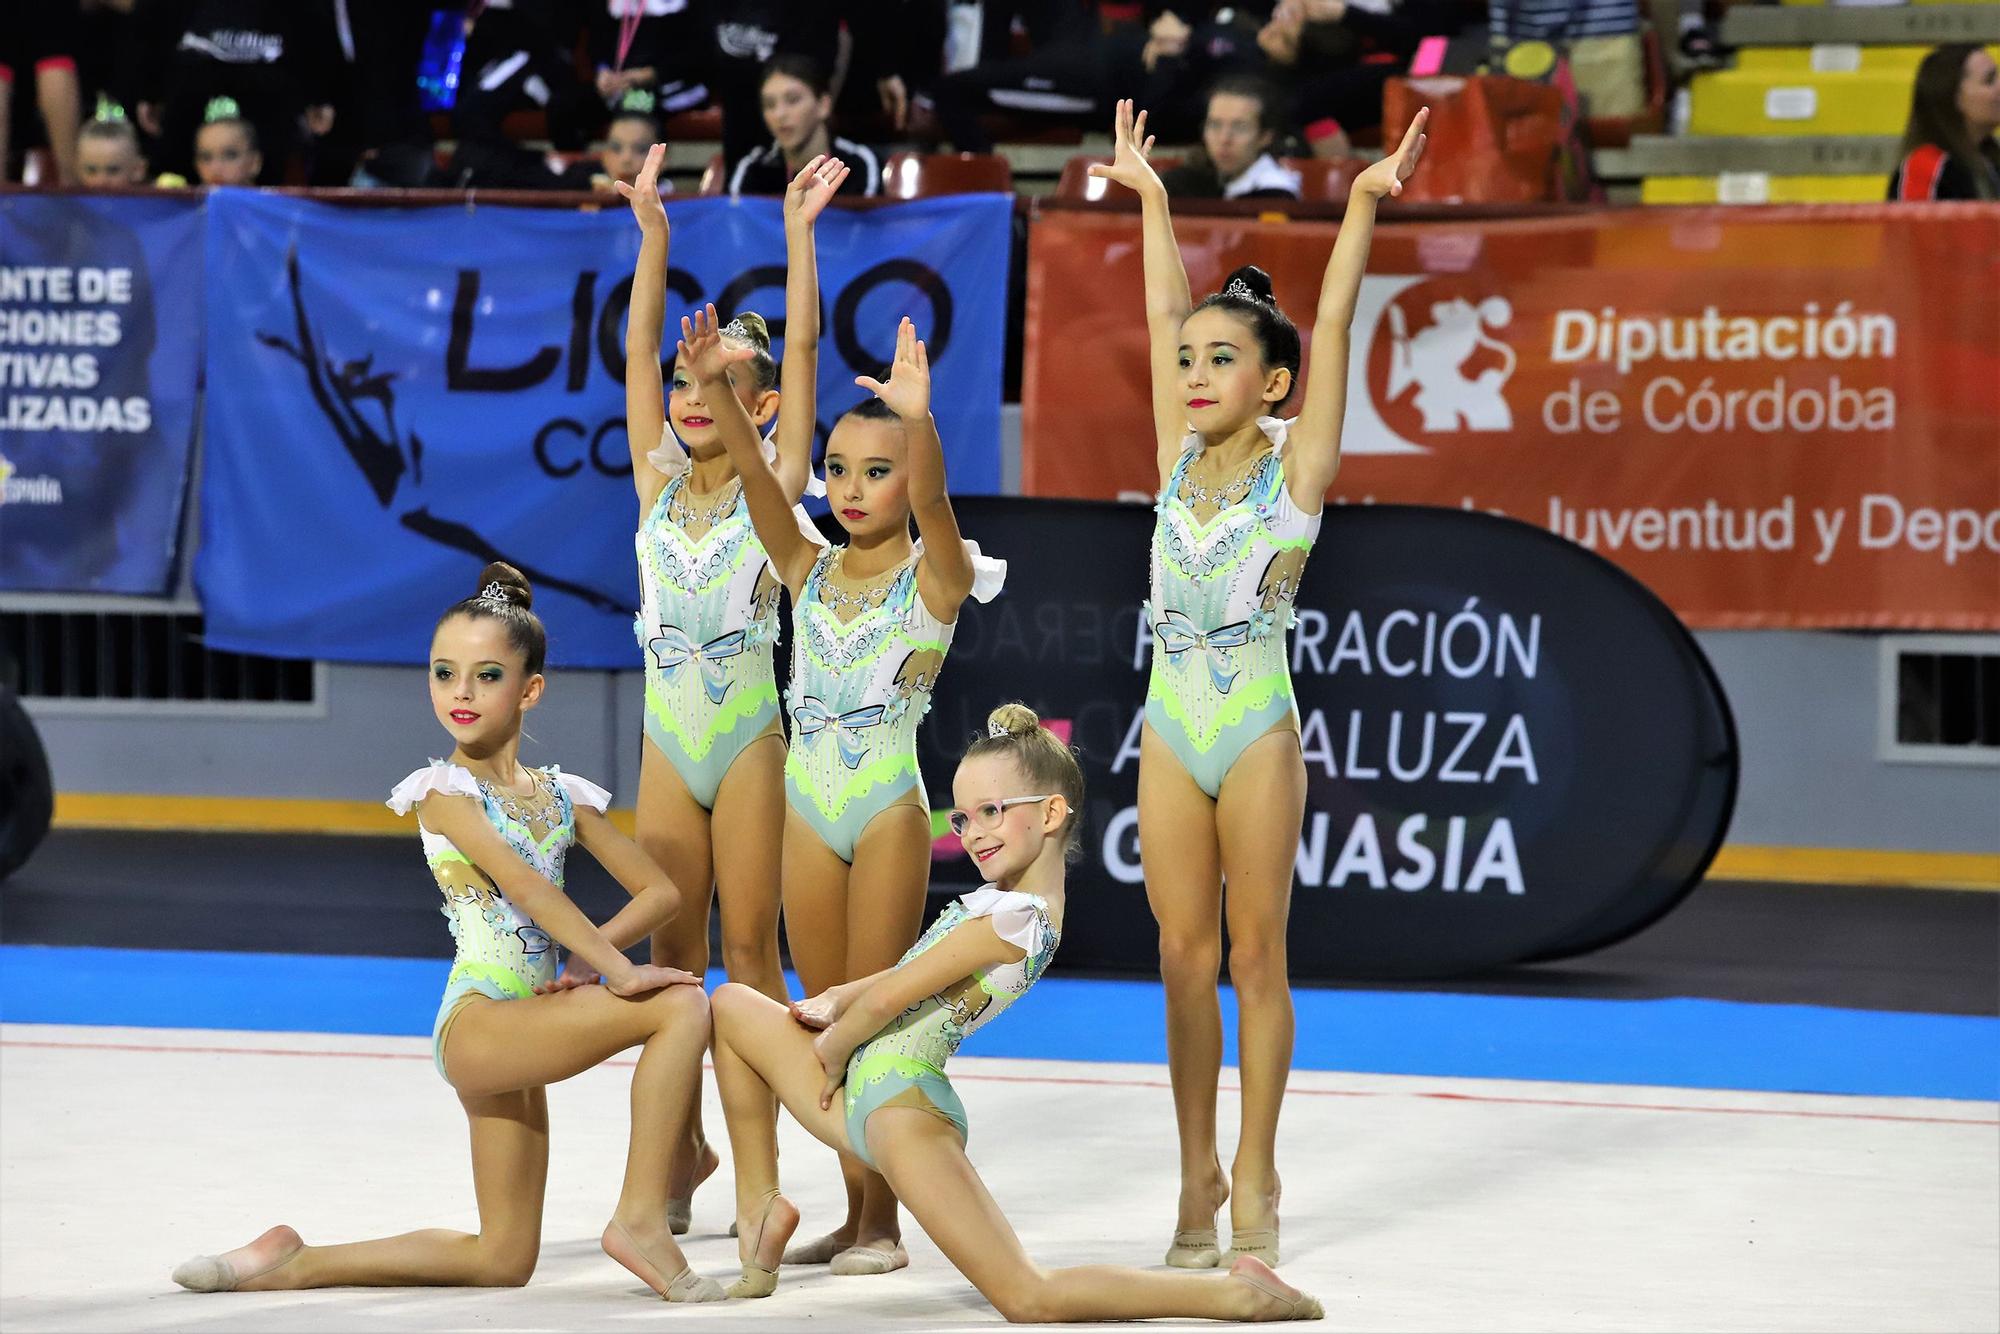 La última jornada del Torneo Ciudad de Córdoba de gimnasia rítmica en imágenes